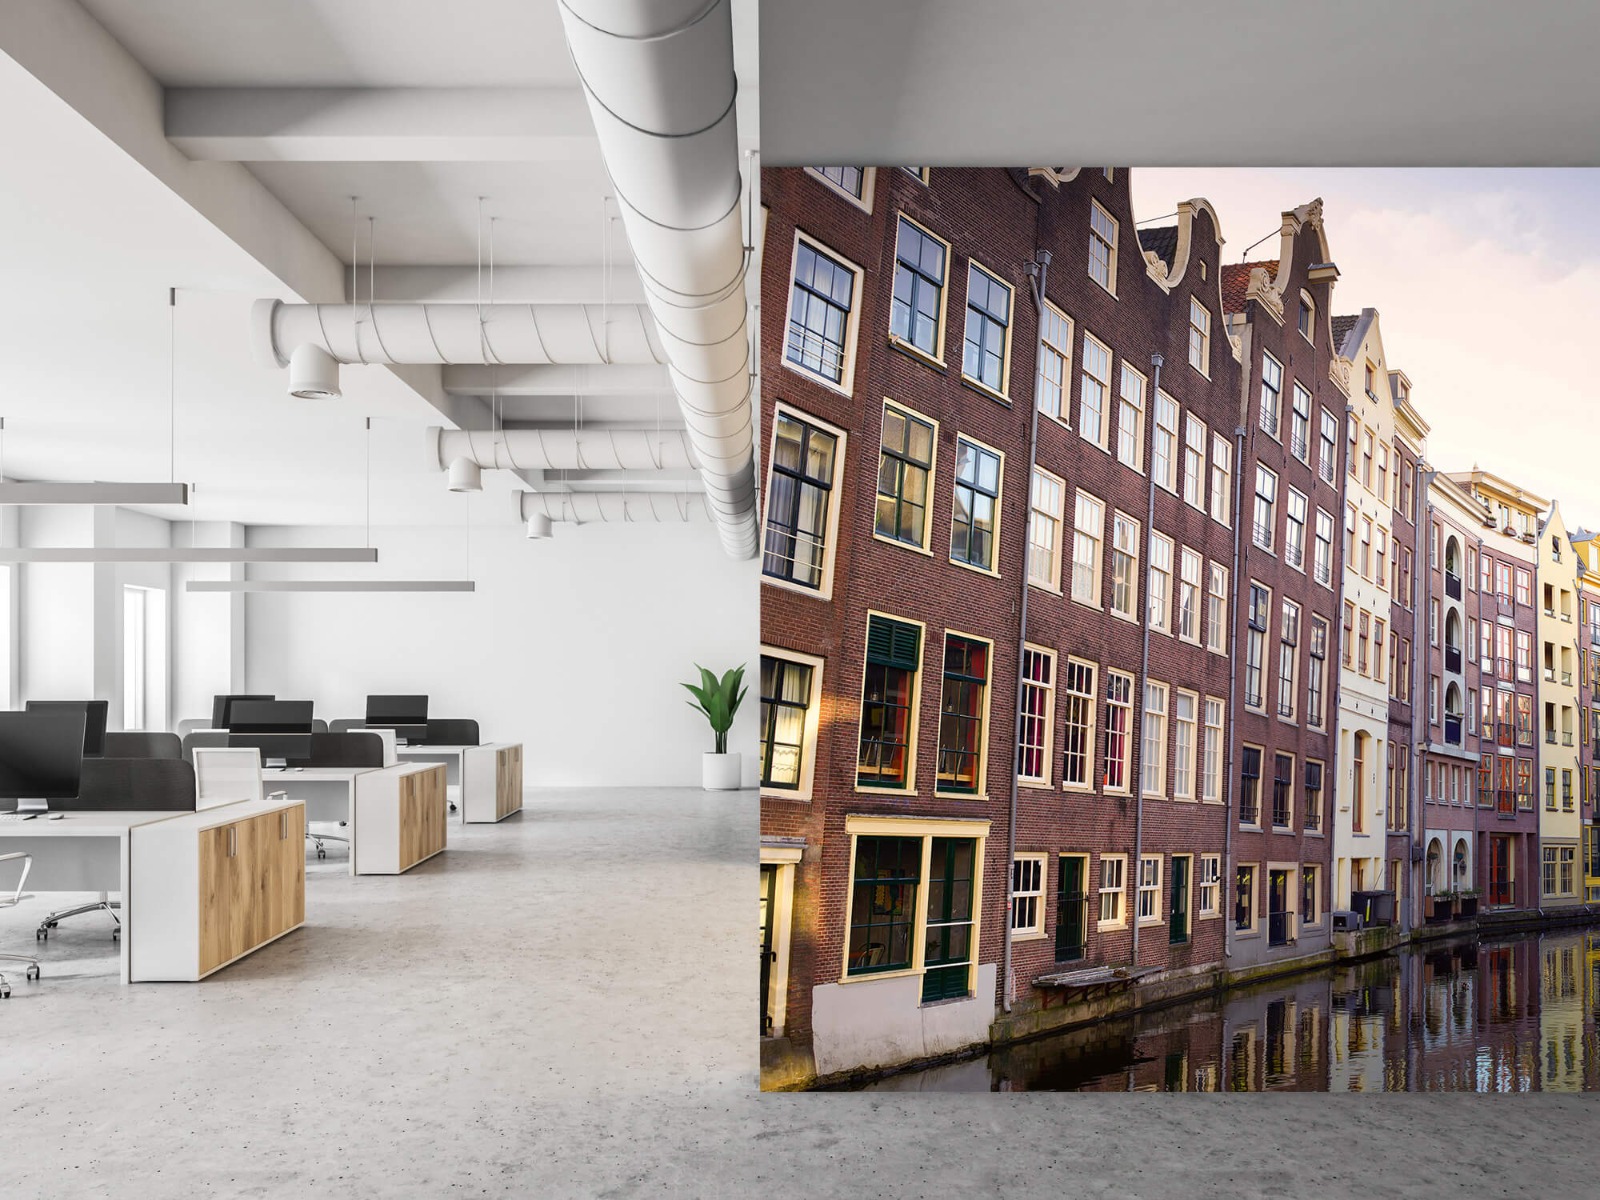 Gebouwen - Amsterdamse huizen aan de gracht - Tienerkamer 21